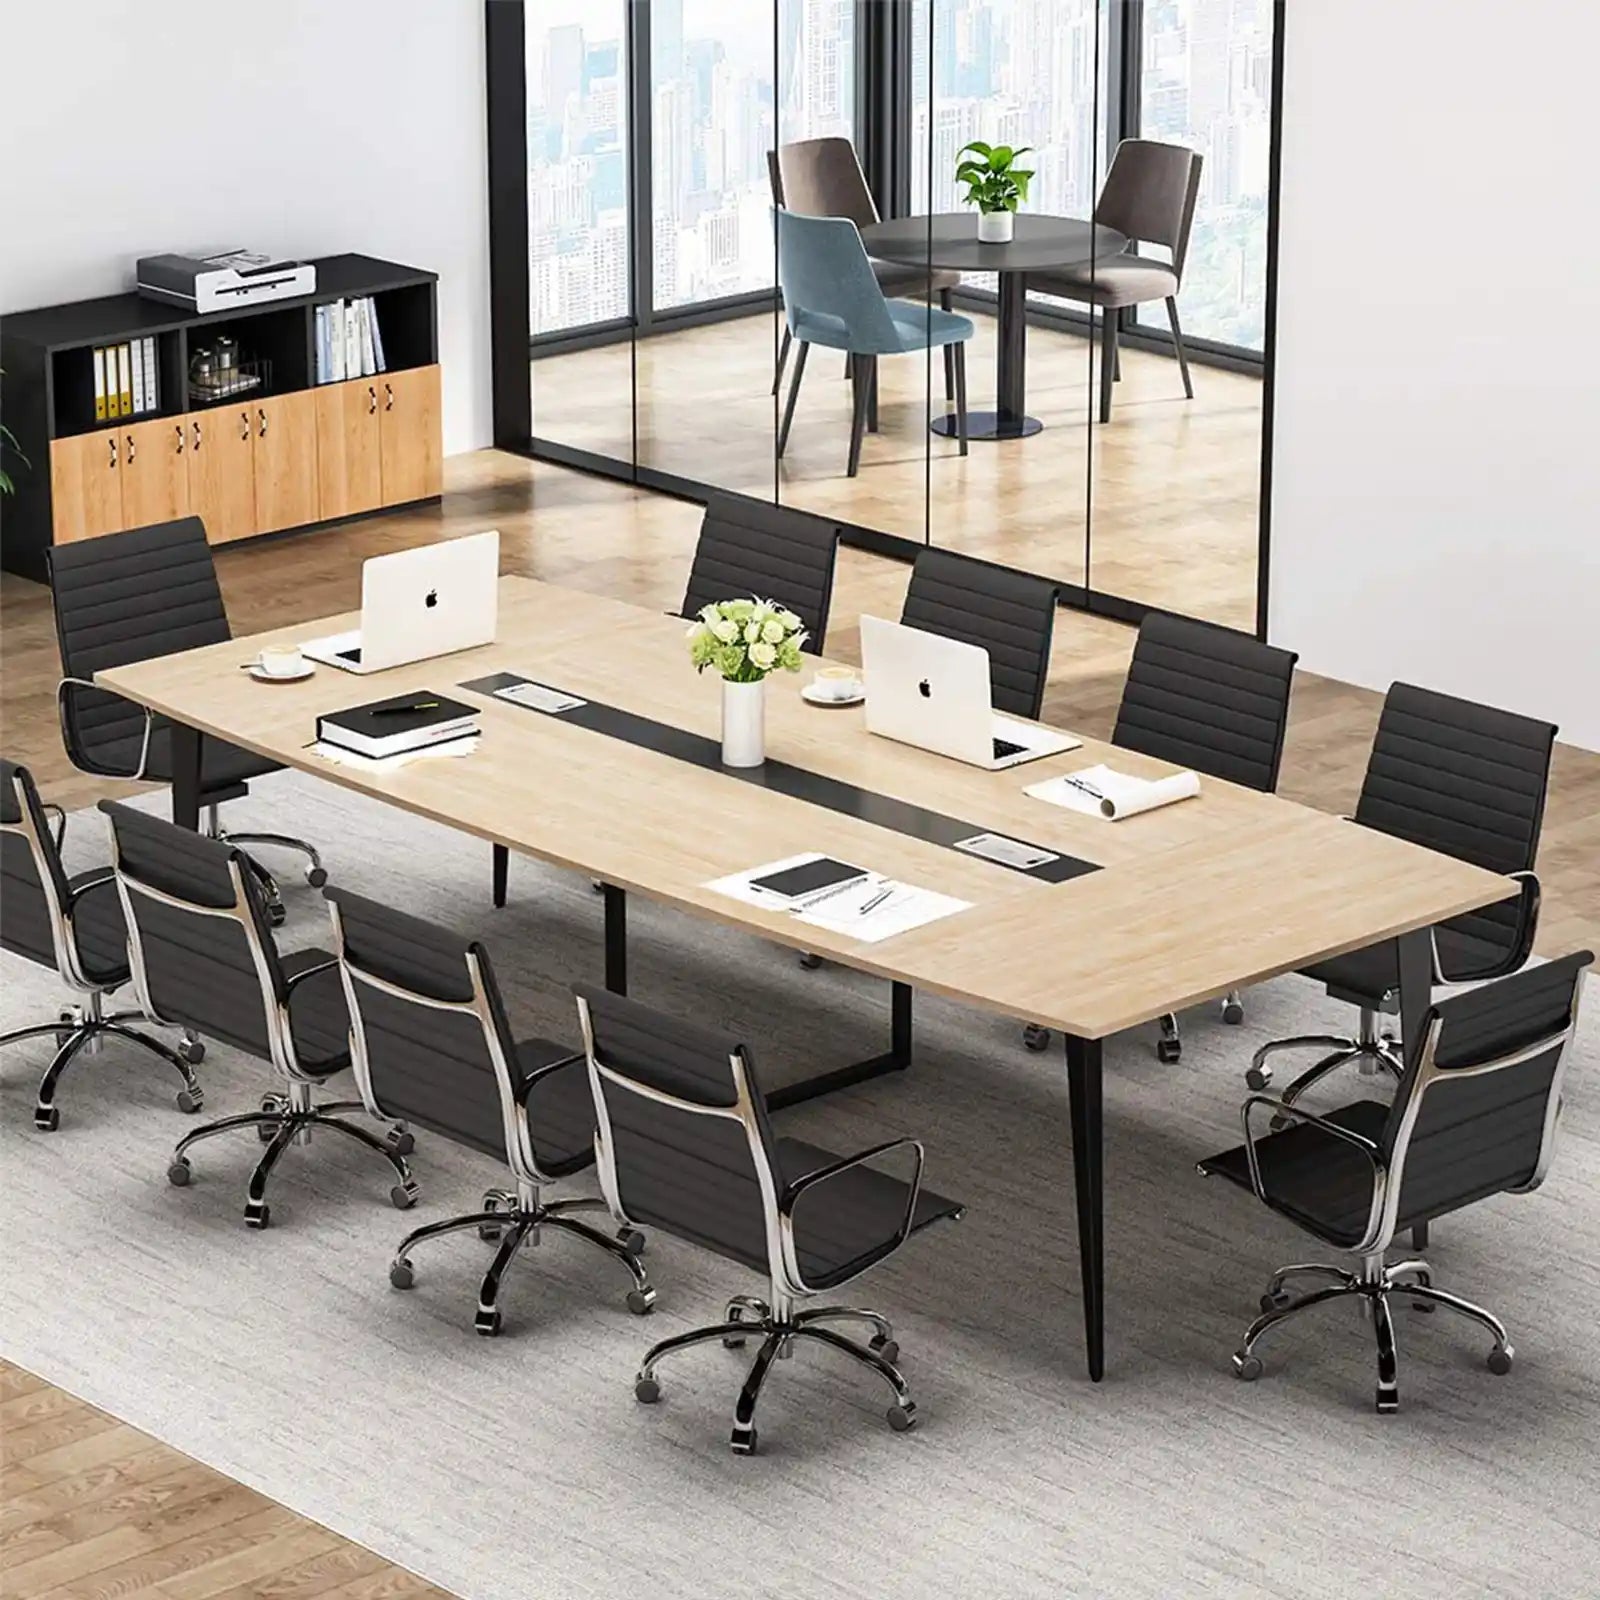 Mesa de reuniones con forma rectangular y mesa de seminarios 